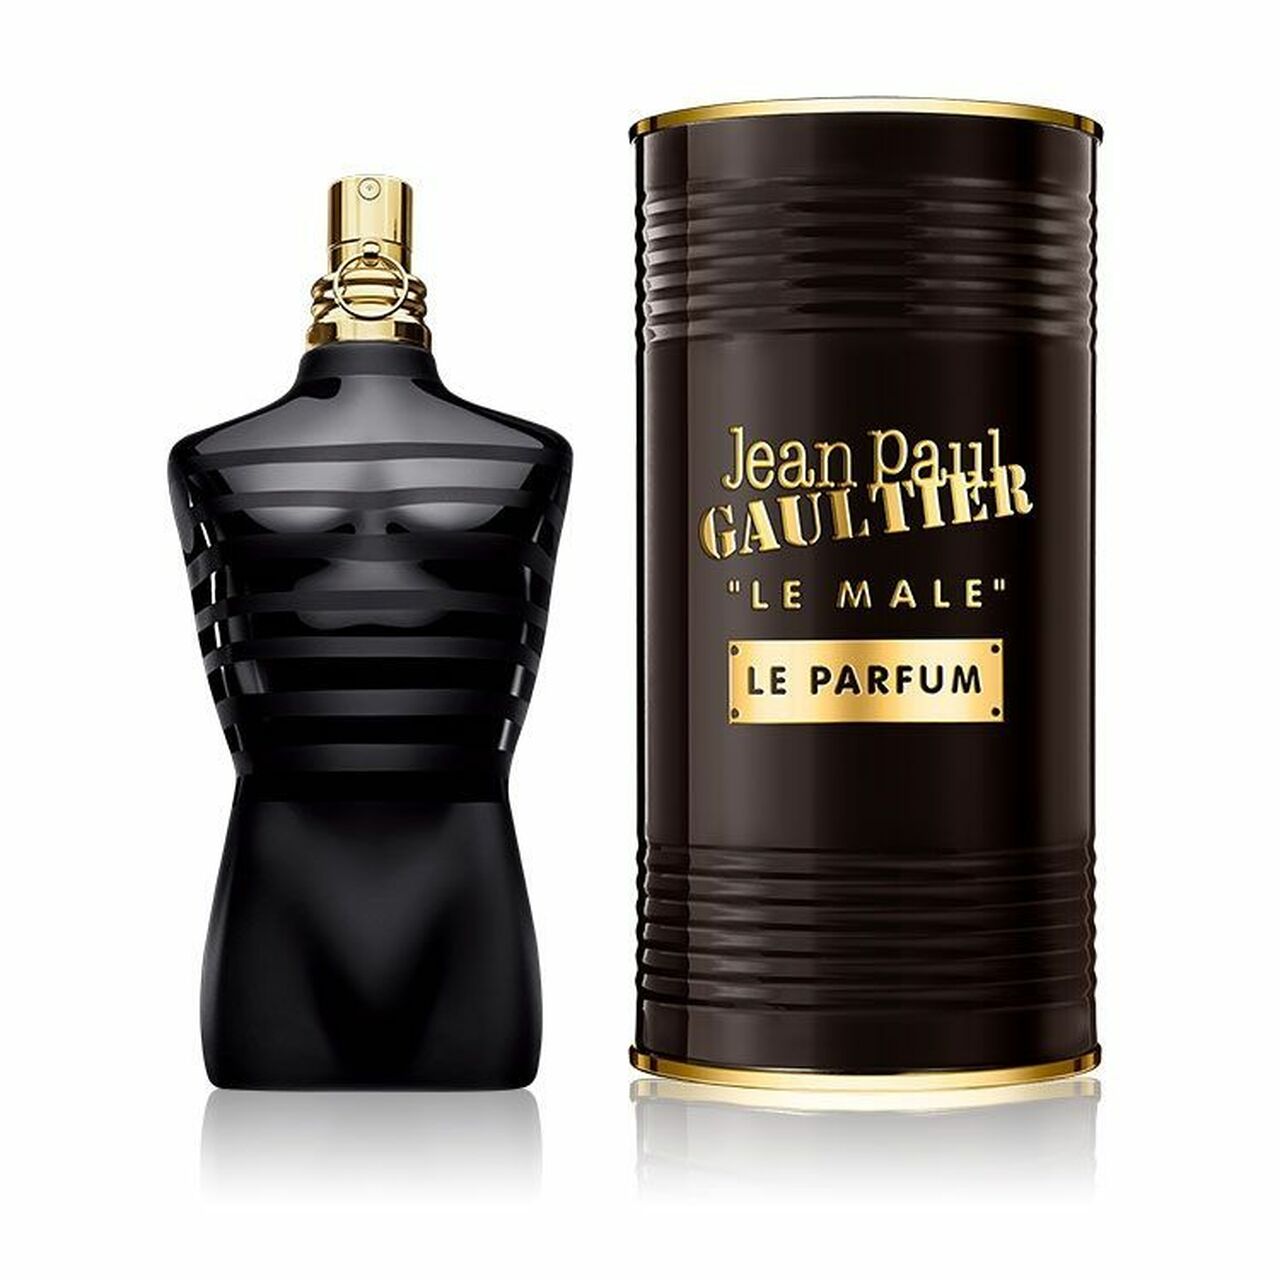 Jean Paul Gaultier Ultra Male for Men 4.2 oz Eau de Toilette Intense Spray